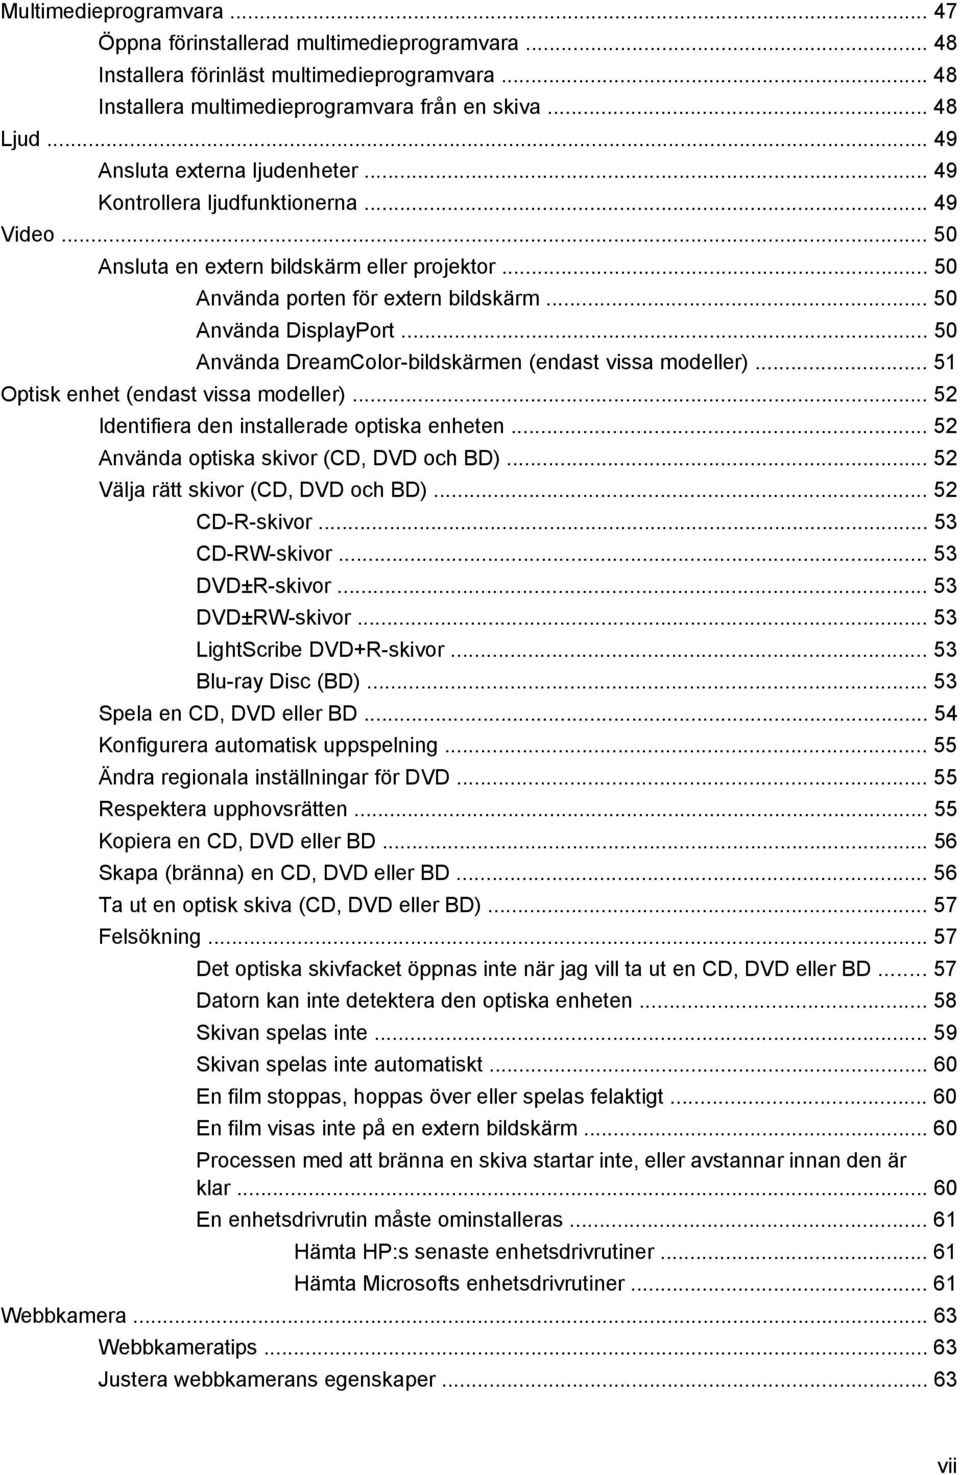 .. 50 Använda DreamColor-bildskärmen (endast vissa modeller)... 51 Optisk enhet (endast vissa modeller)... 52 Identifiera den installerade optiska enheten... 52 Använda optiska skivor (CD, DVD och BD).